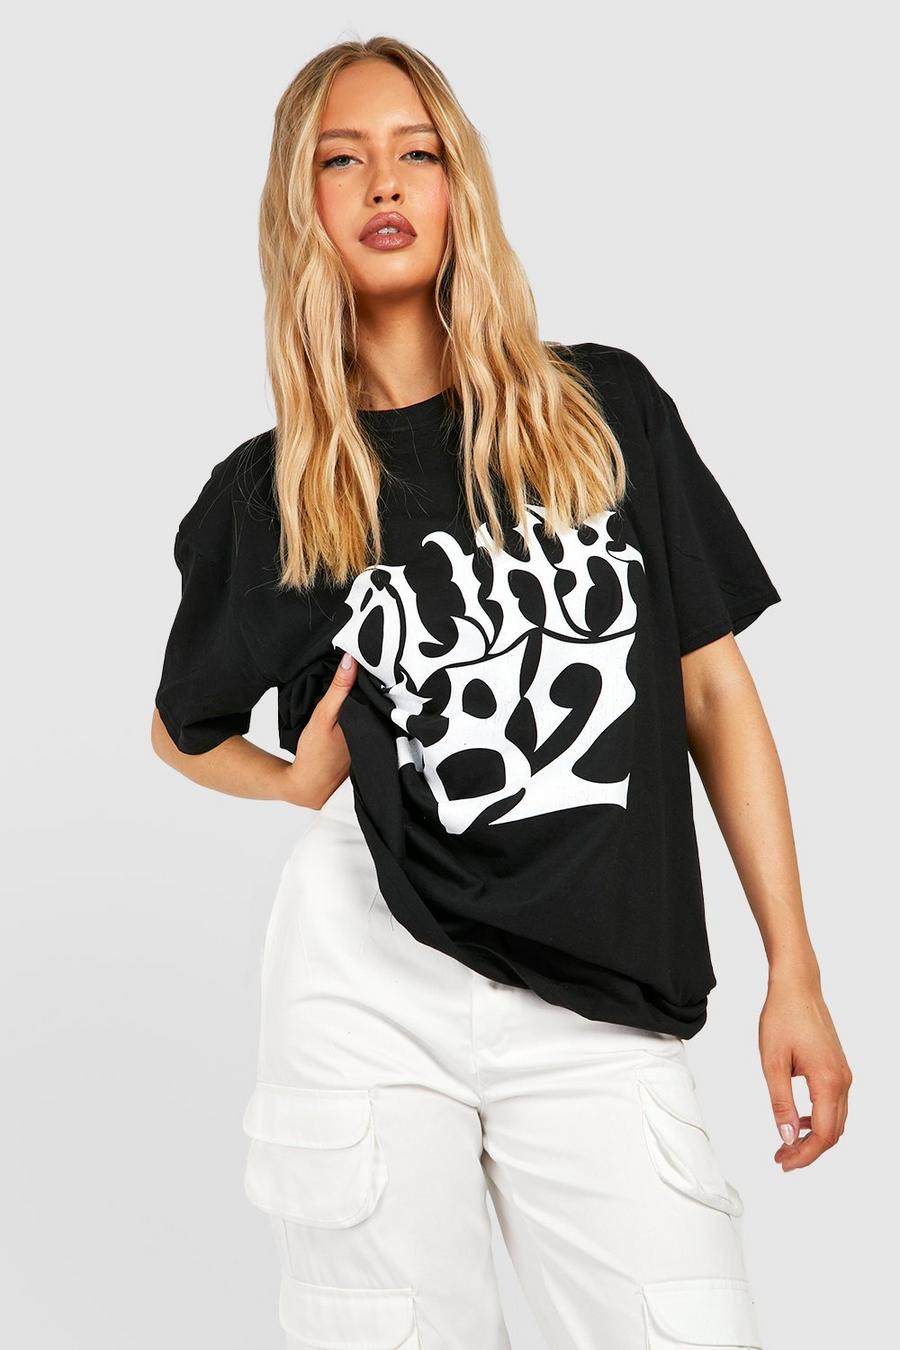 Black svart Tall Oversized Blink 182 License T-shirt